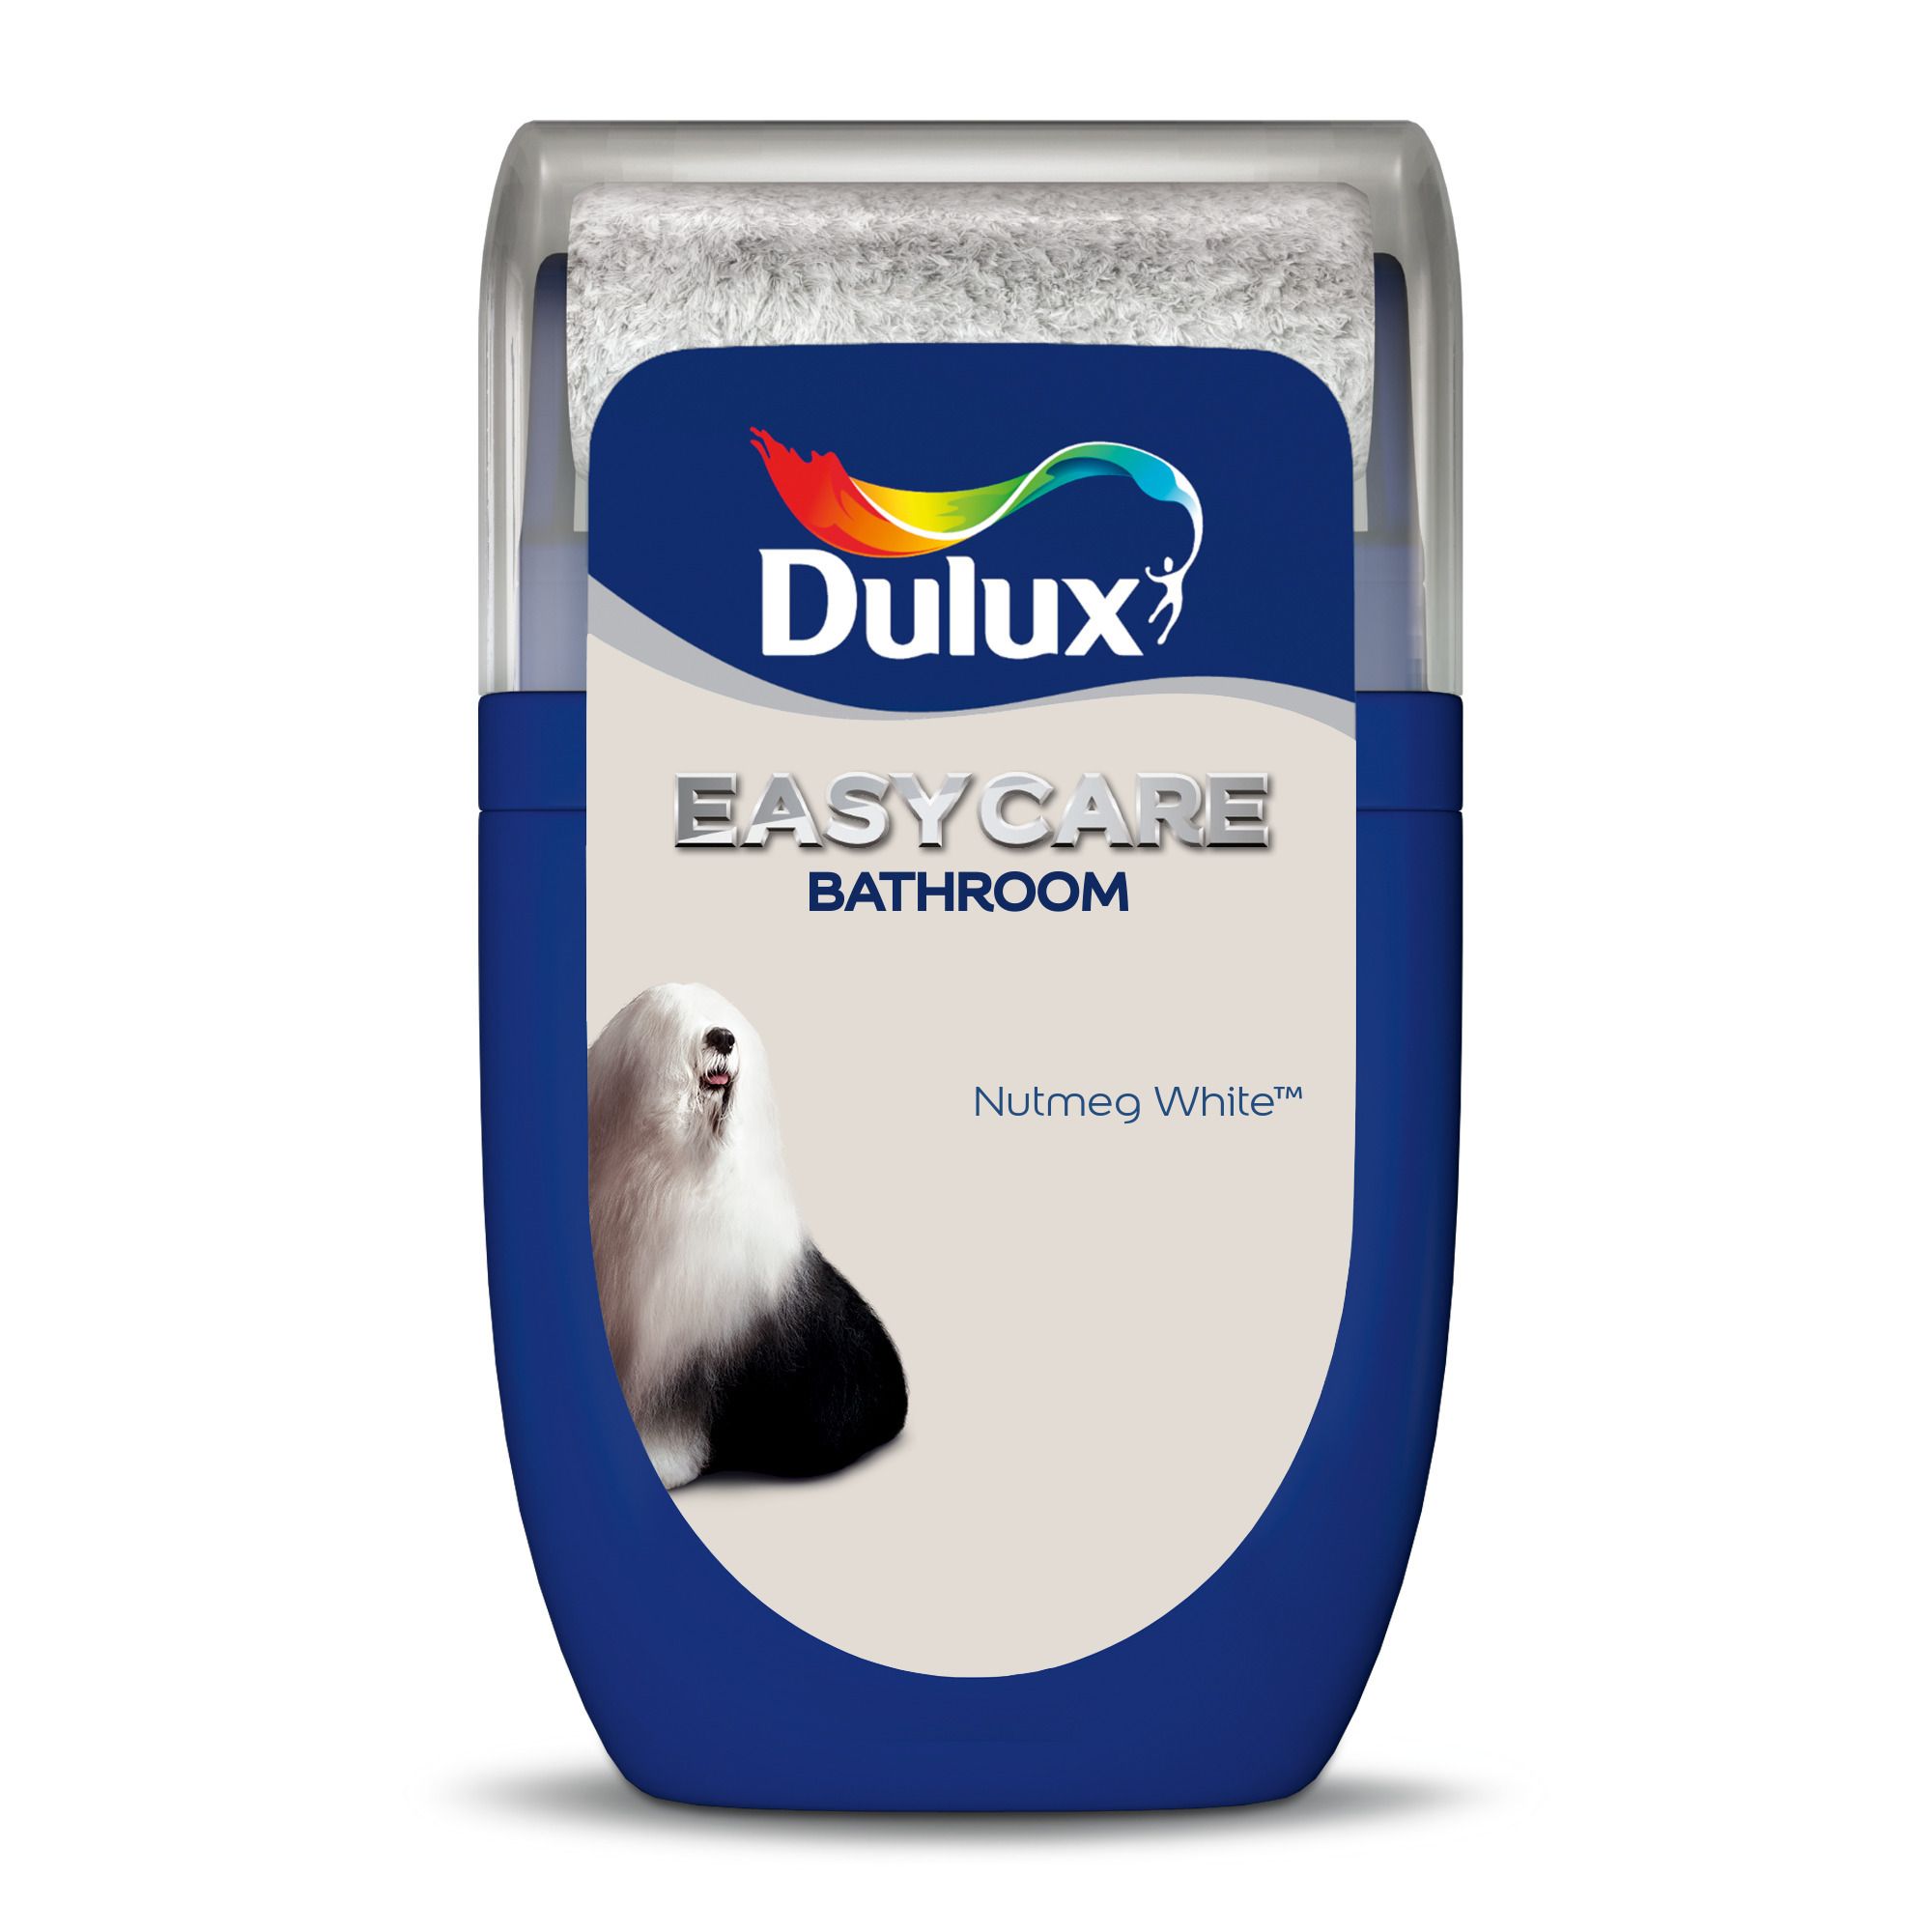 Dulux Easycare Bathroom Nutmeg White Soft sheen Emulsion paint, 30ml